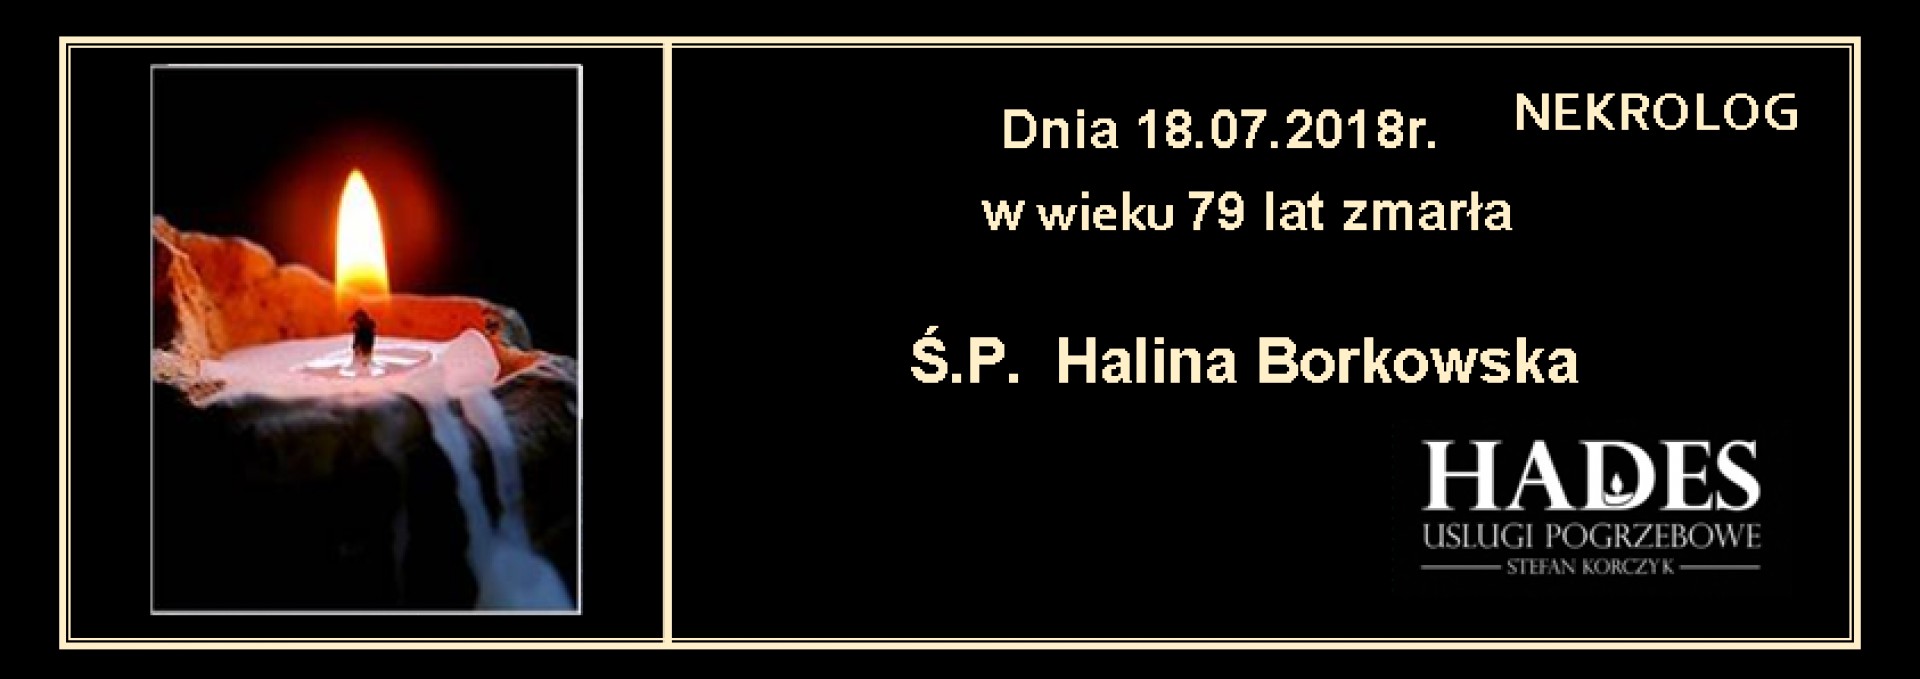 Ś.P. Halina Borkowska